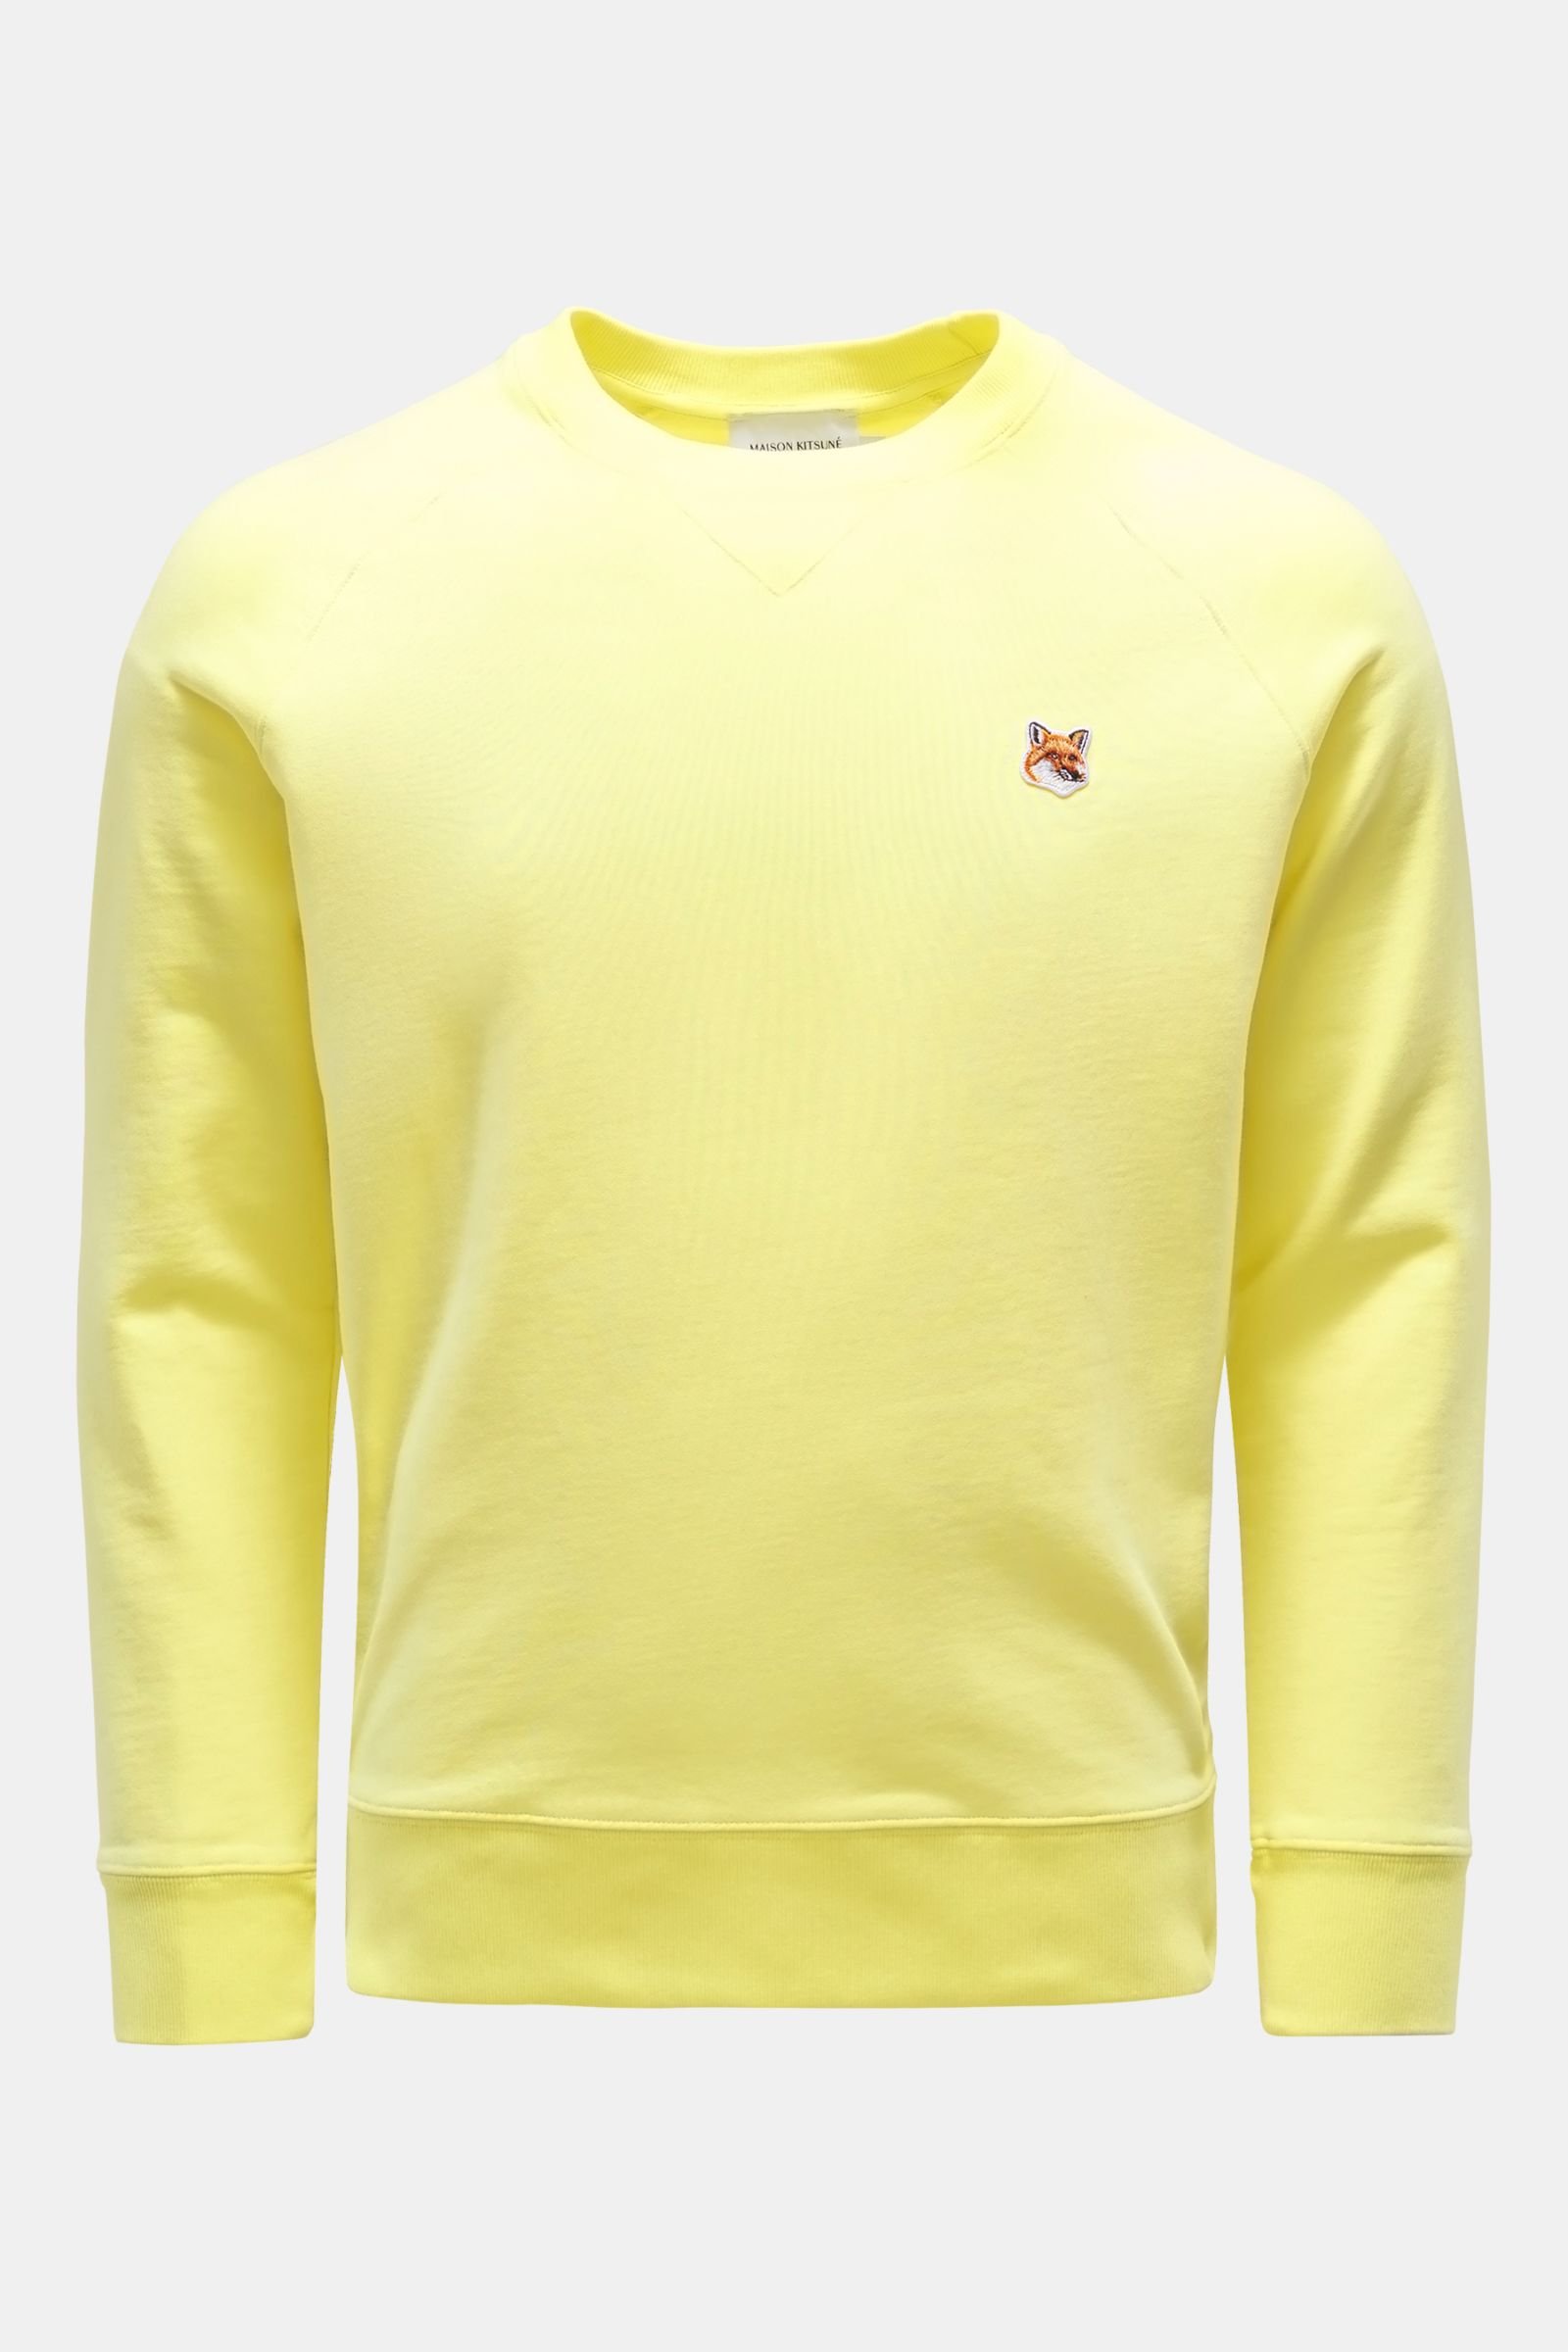 Crew neck sweatshirt yellow